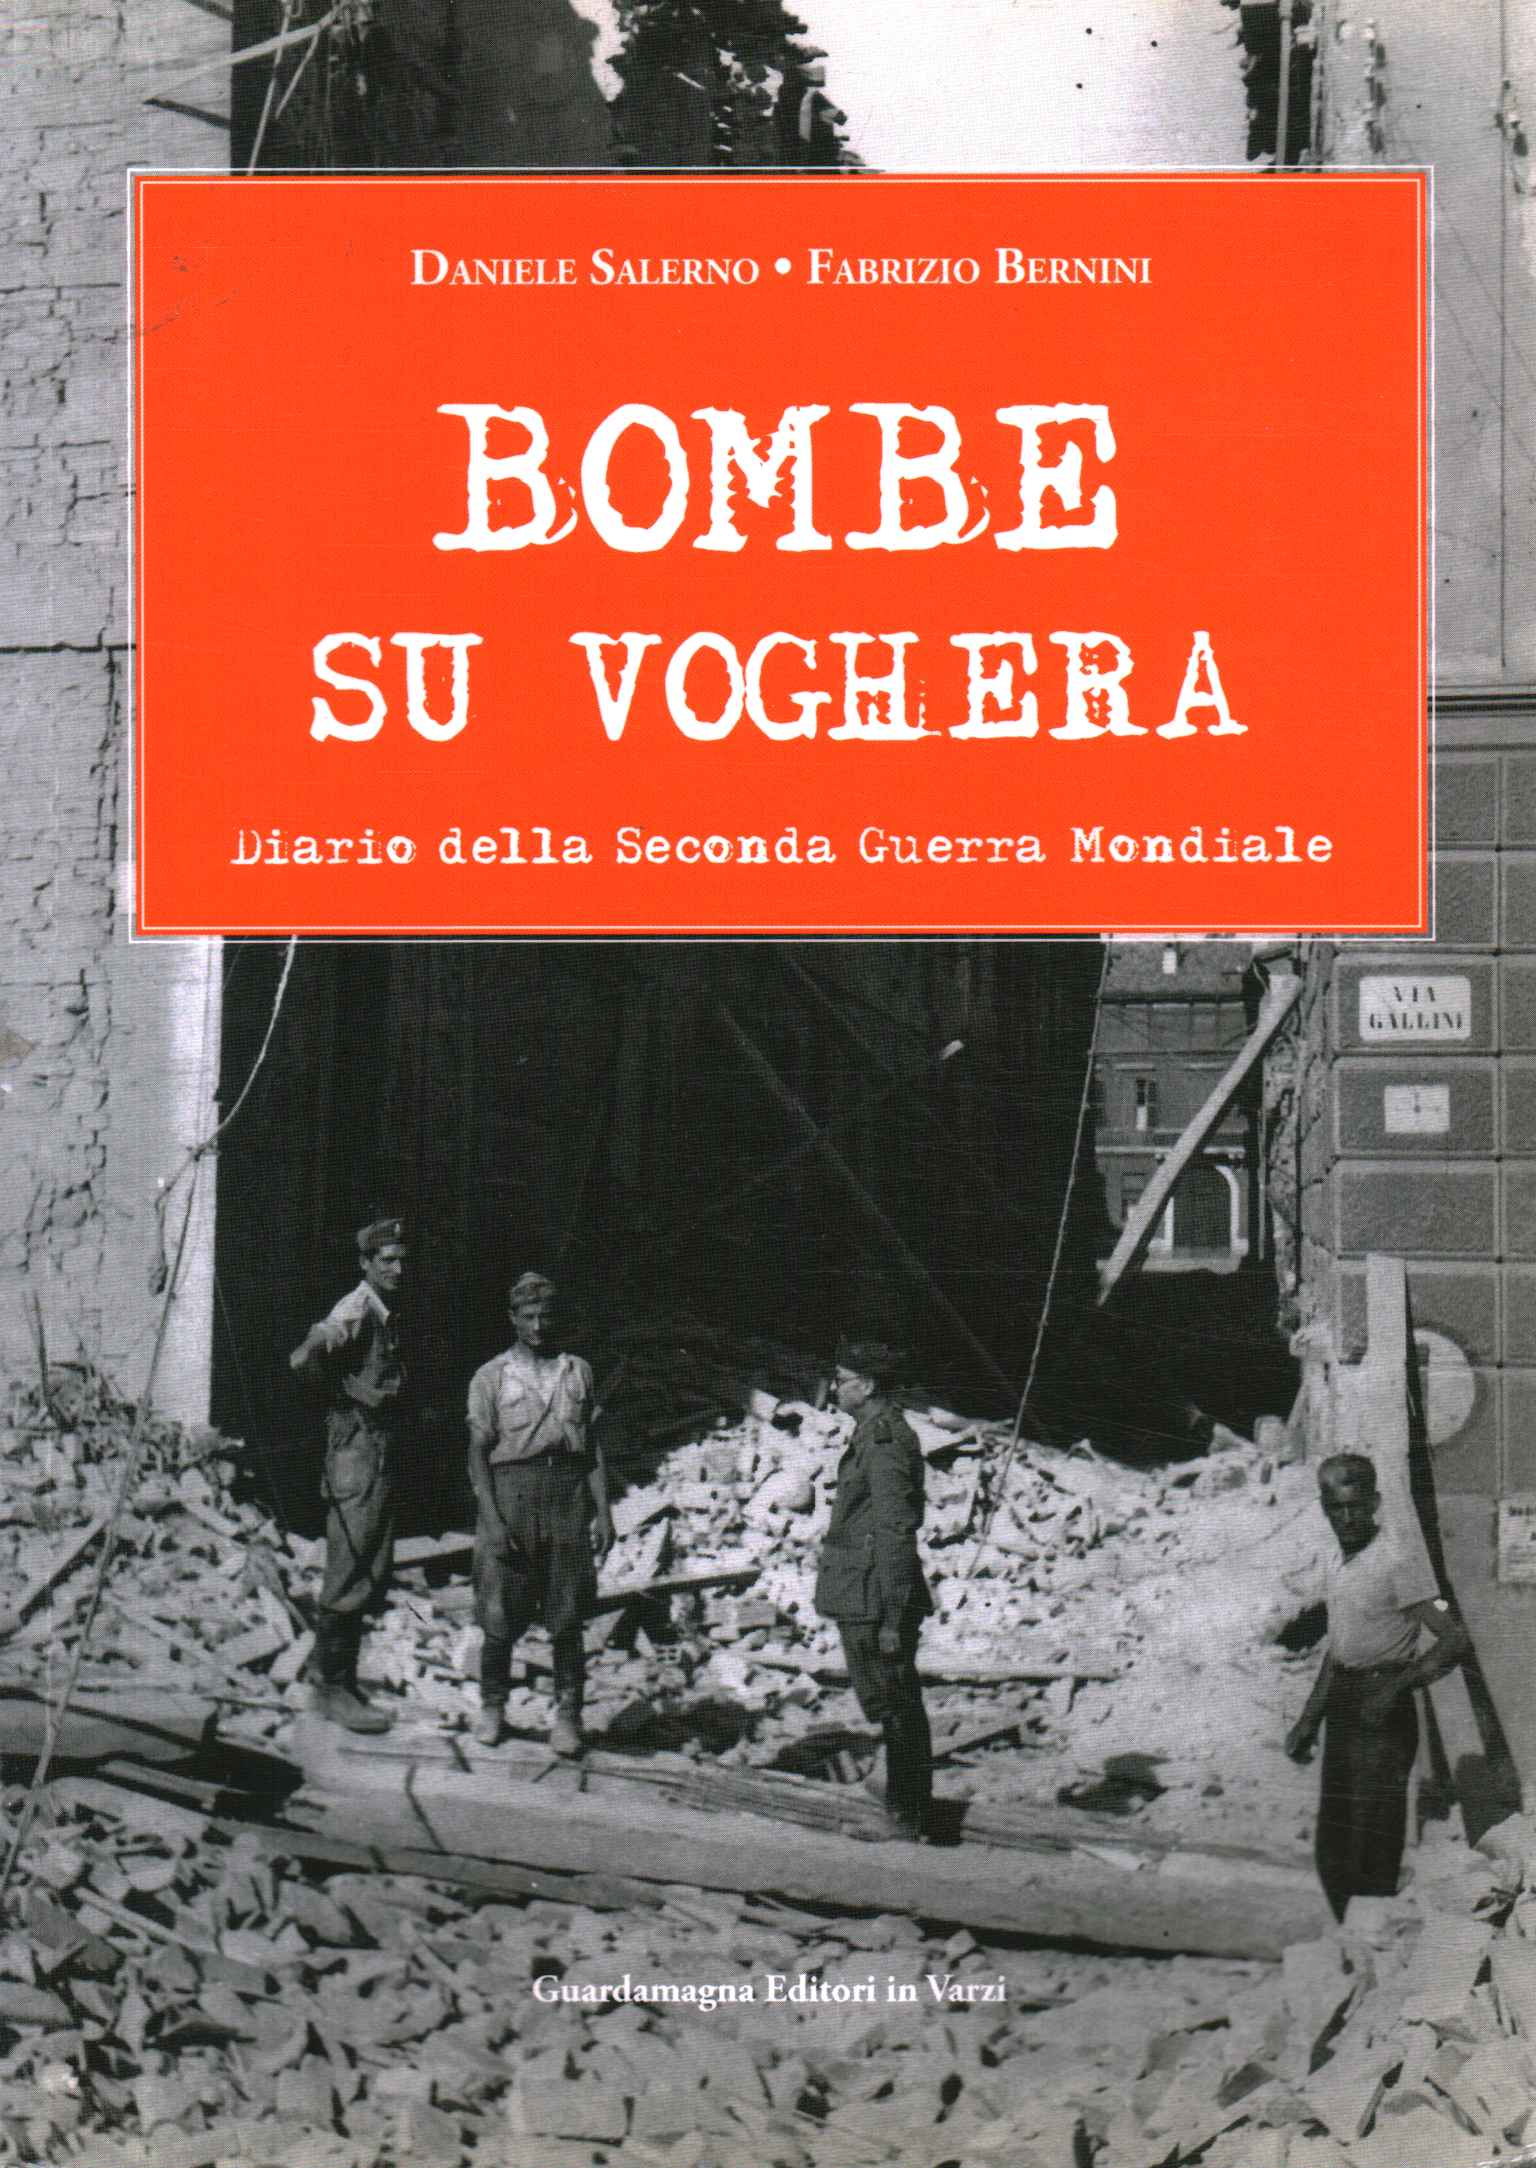 Bombas sobre Voghera. Diario del segundo%2, Bombas sobre Voghera. Diario del segundo%2